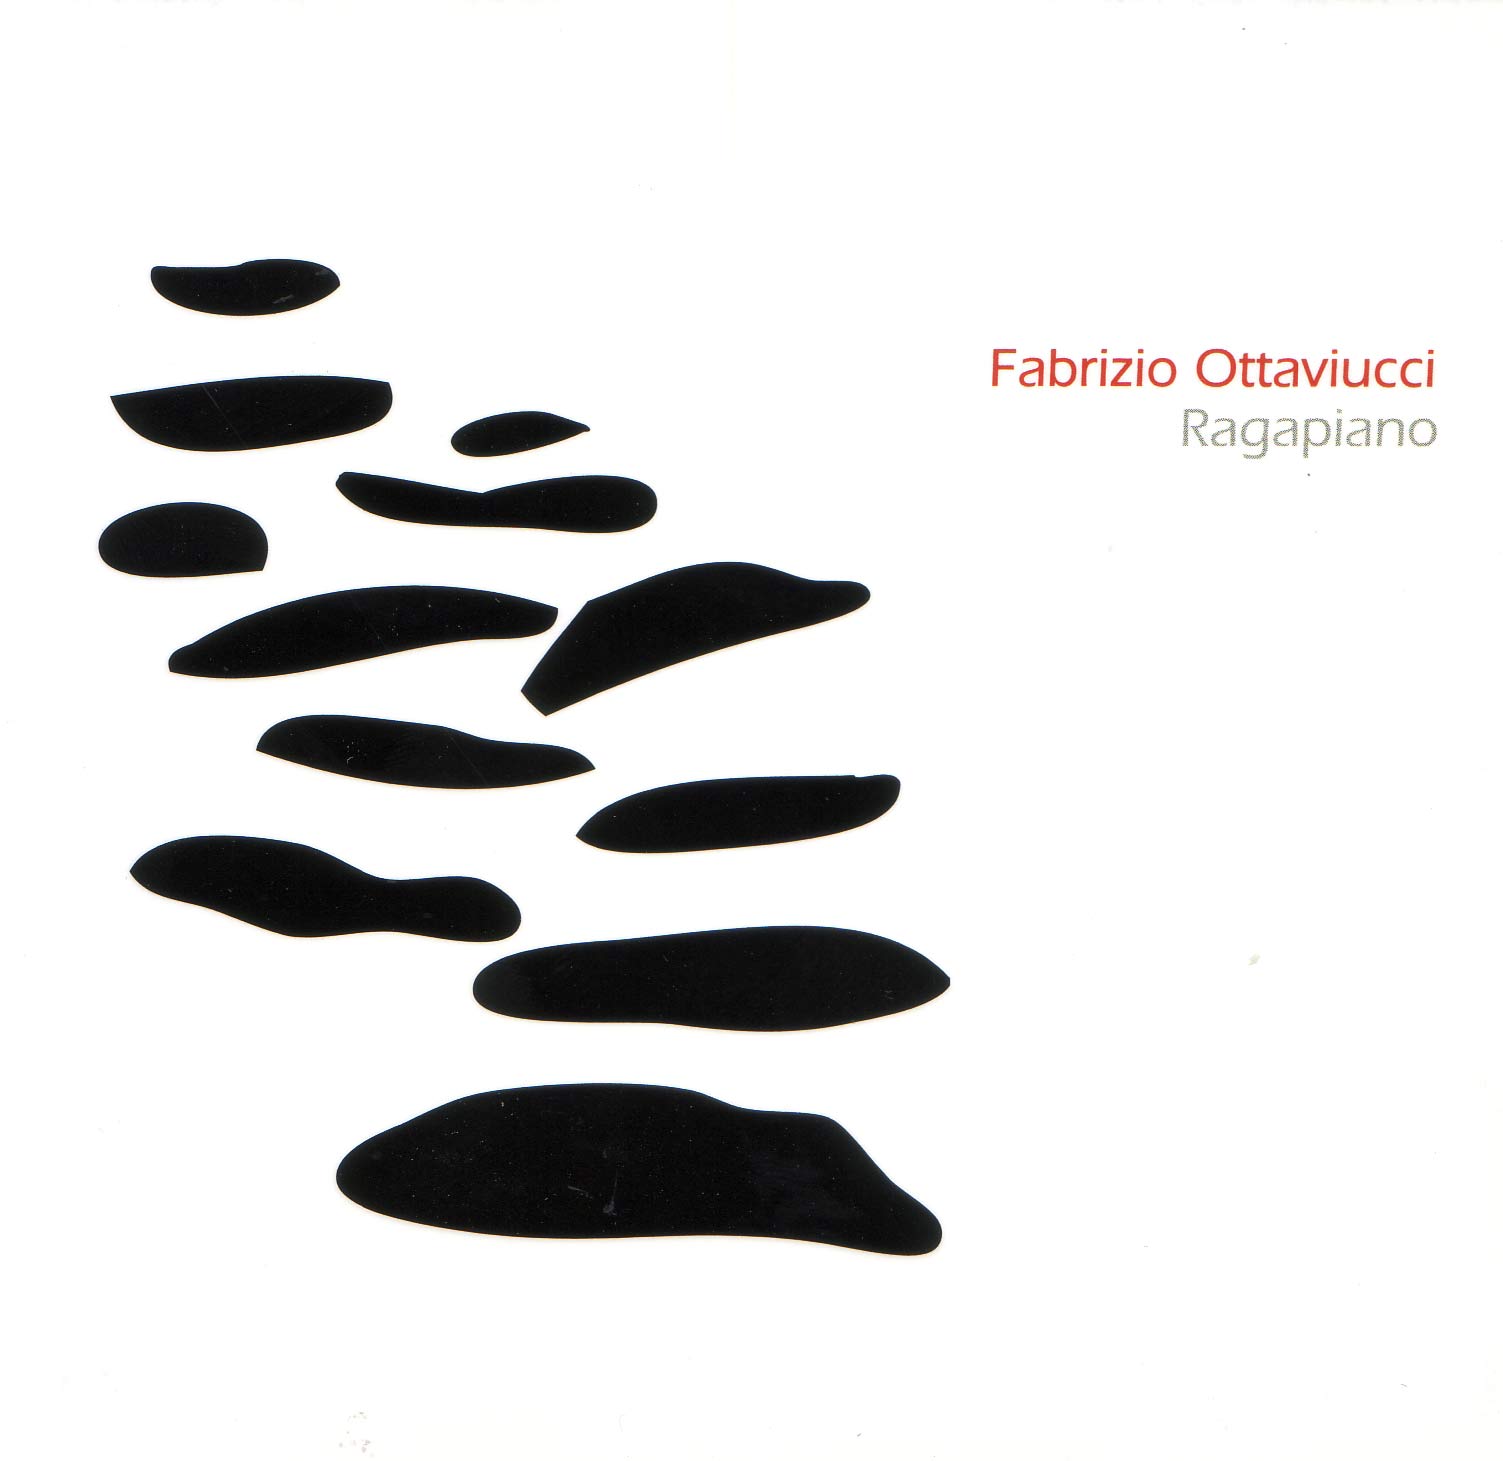 Fabrizio Ottaviucci - Ragapiano